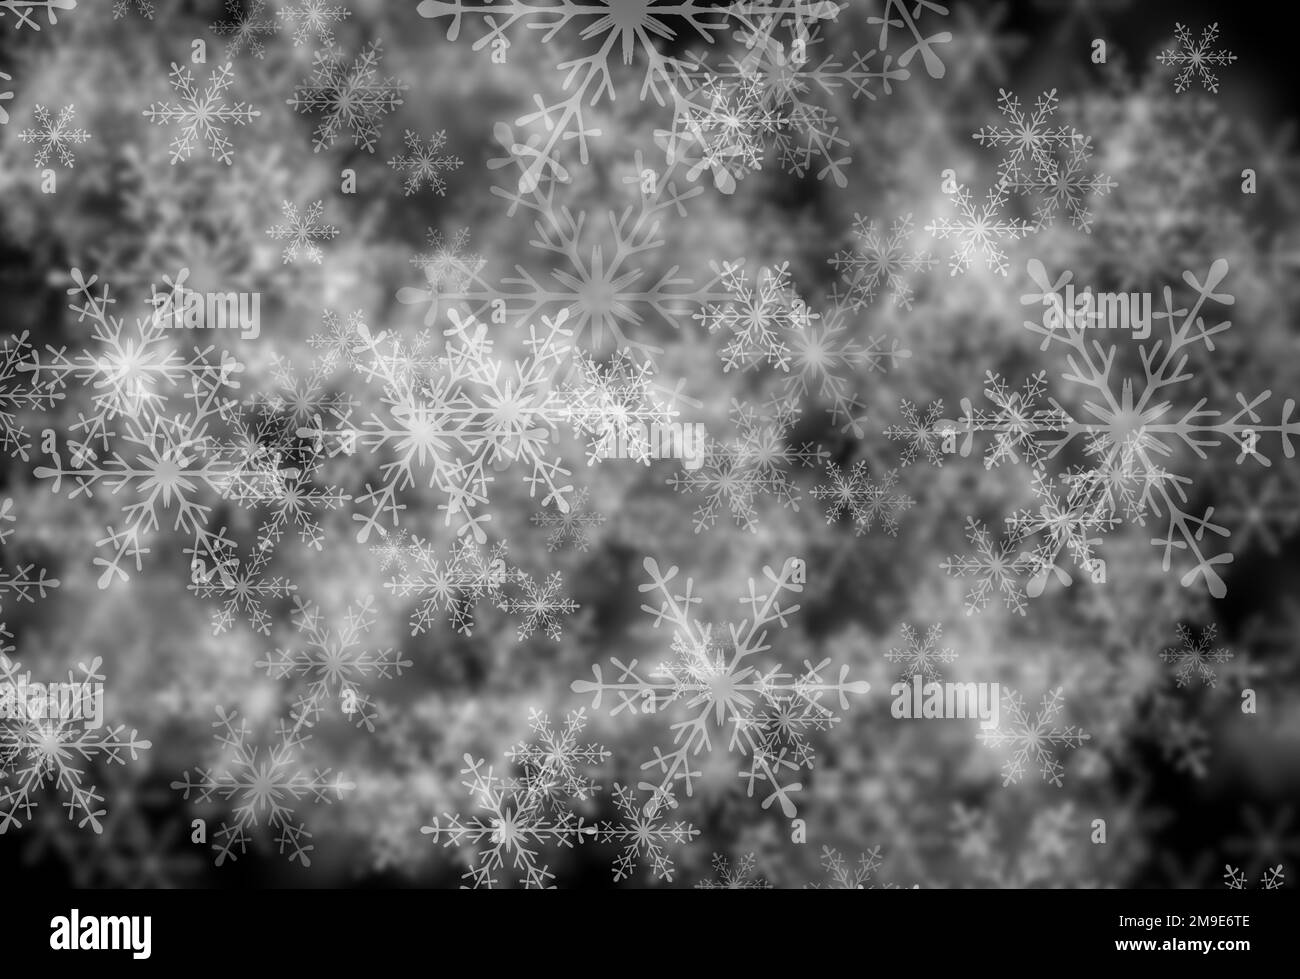 Snowflakes on black background Stock Photo